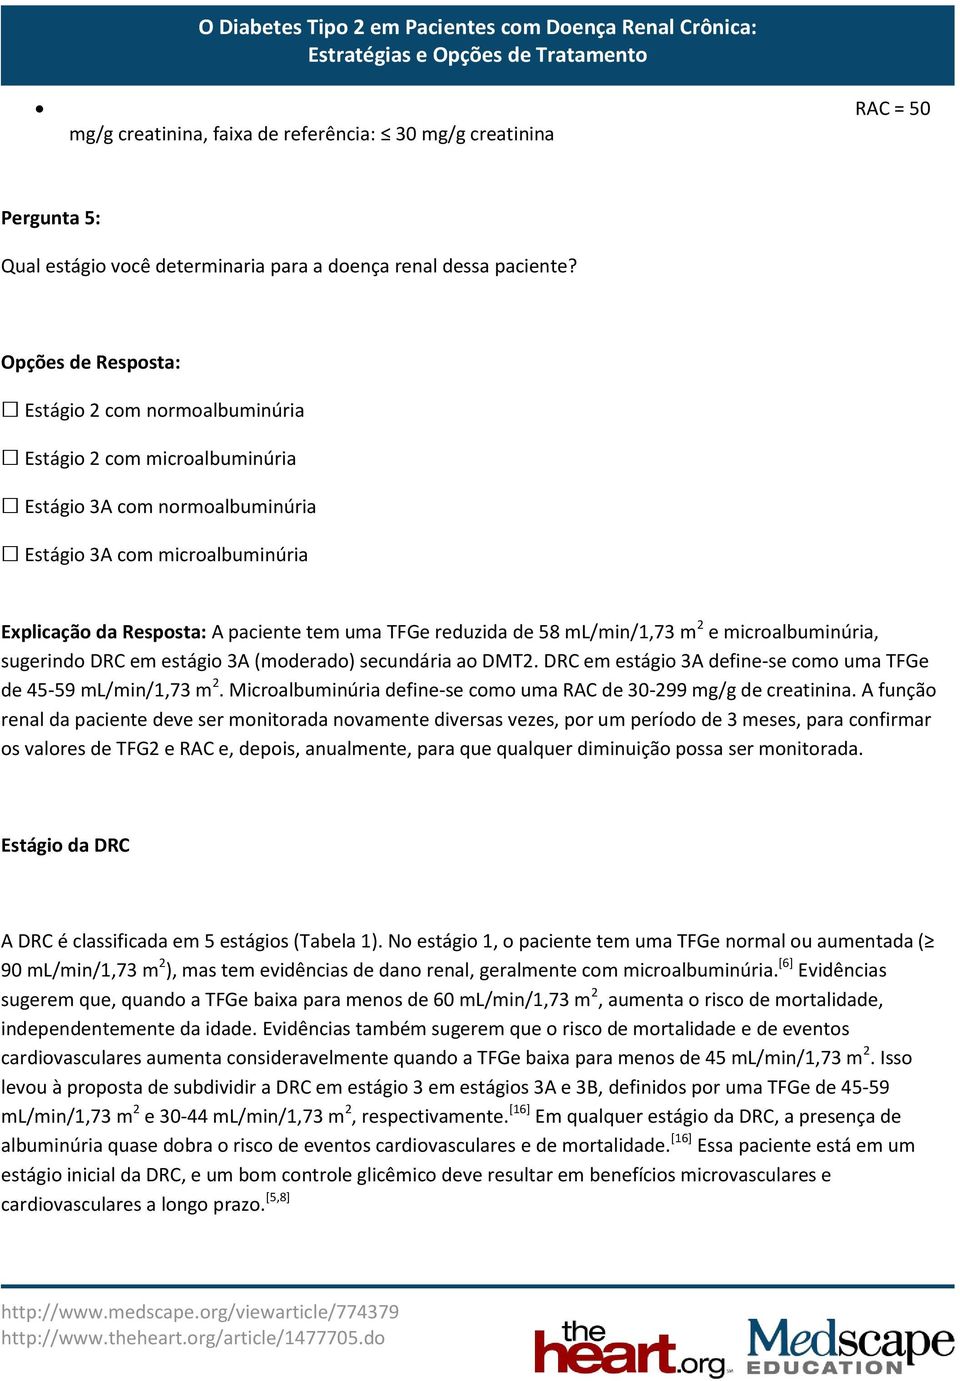 reduzida de 58 ml/min/1,73 m 2 e microalbuminúria, sugerindo DRC em estágio 3A (moderado) secundária ao DMT2. DRC em estágio 3A define-se como uma TFGe de 45-59 ml/min/1,73 m 2.